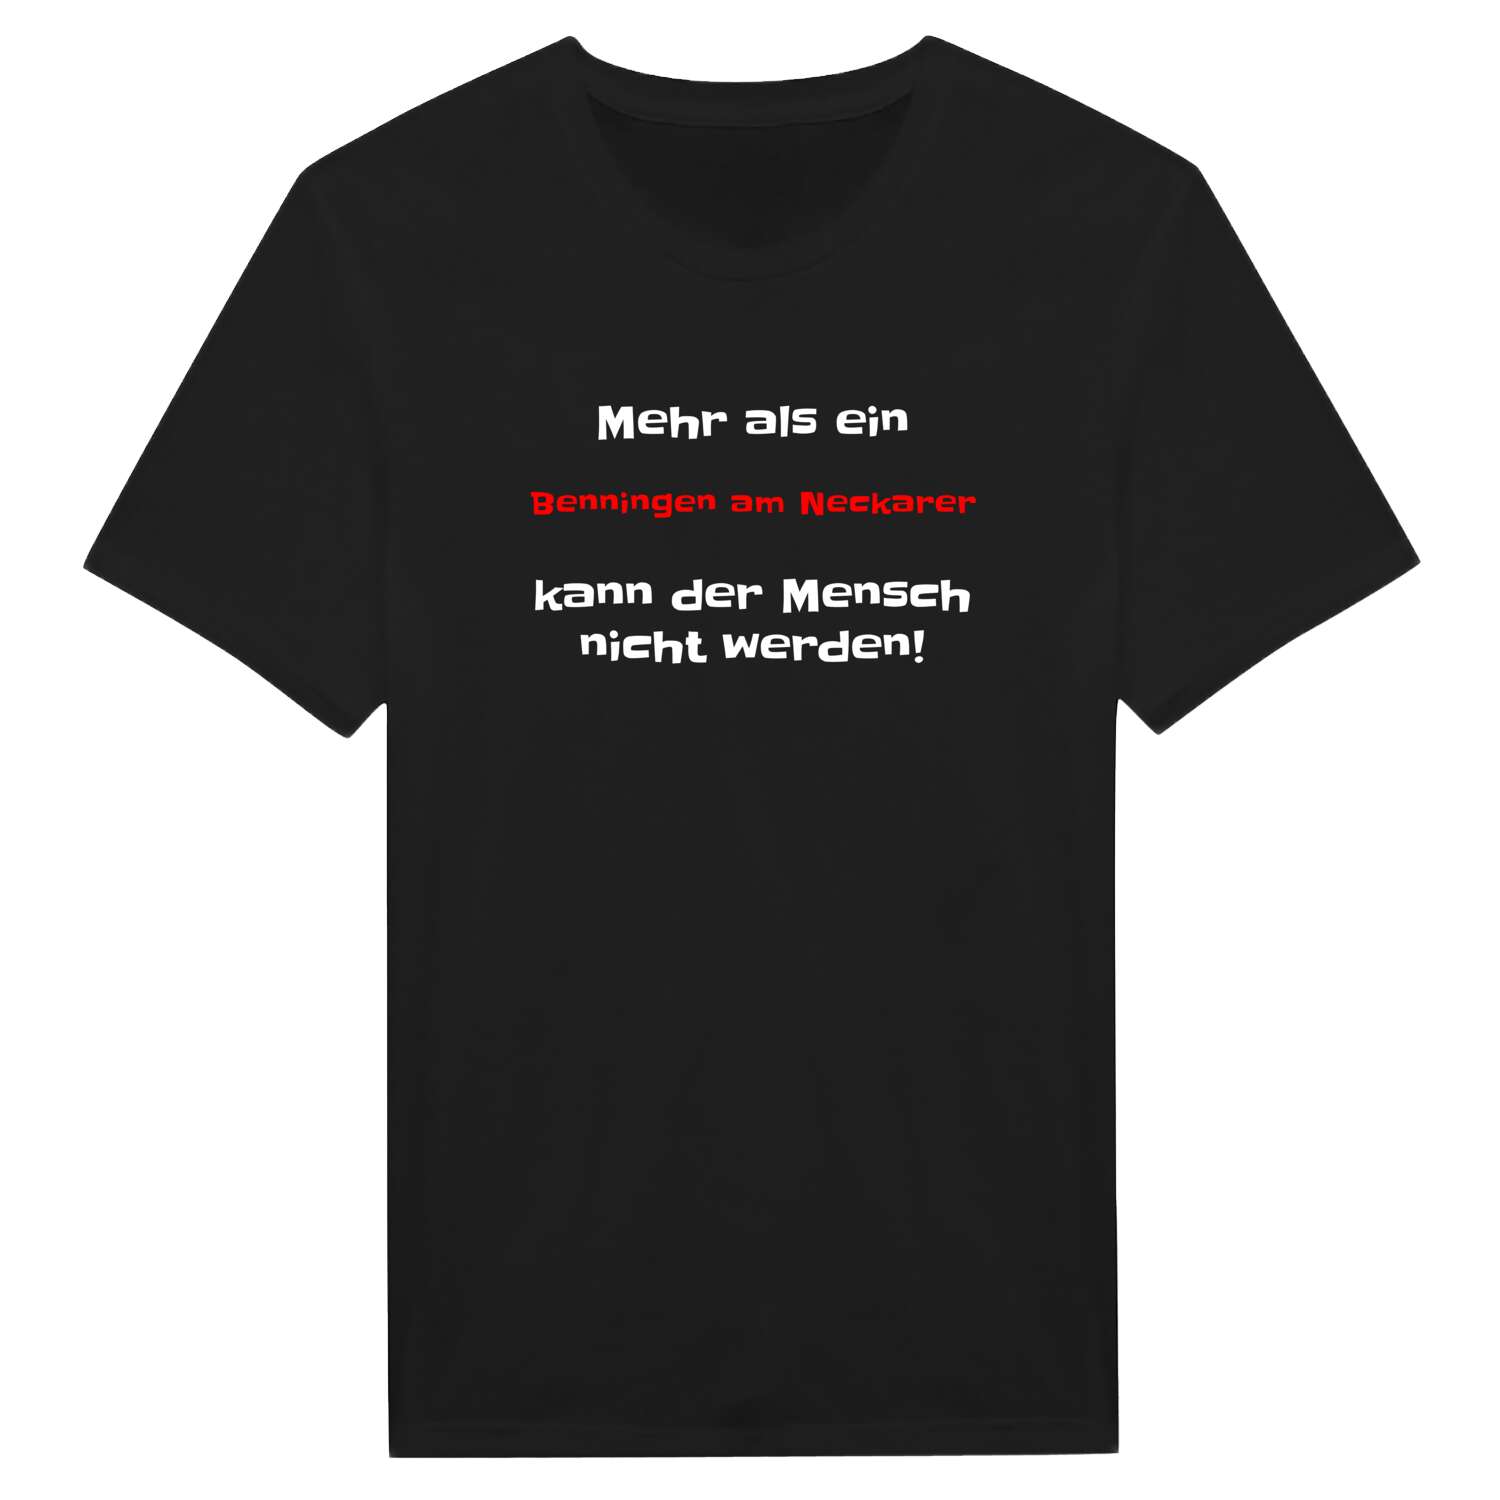 Benningen am Neckar T-Shirt »Mehr als ein«